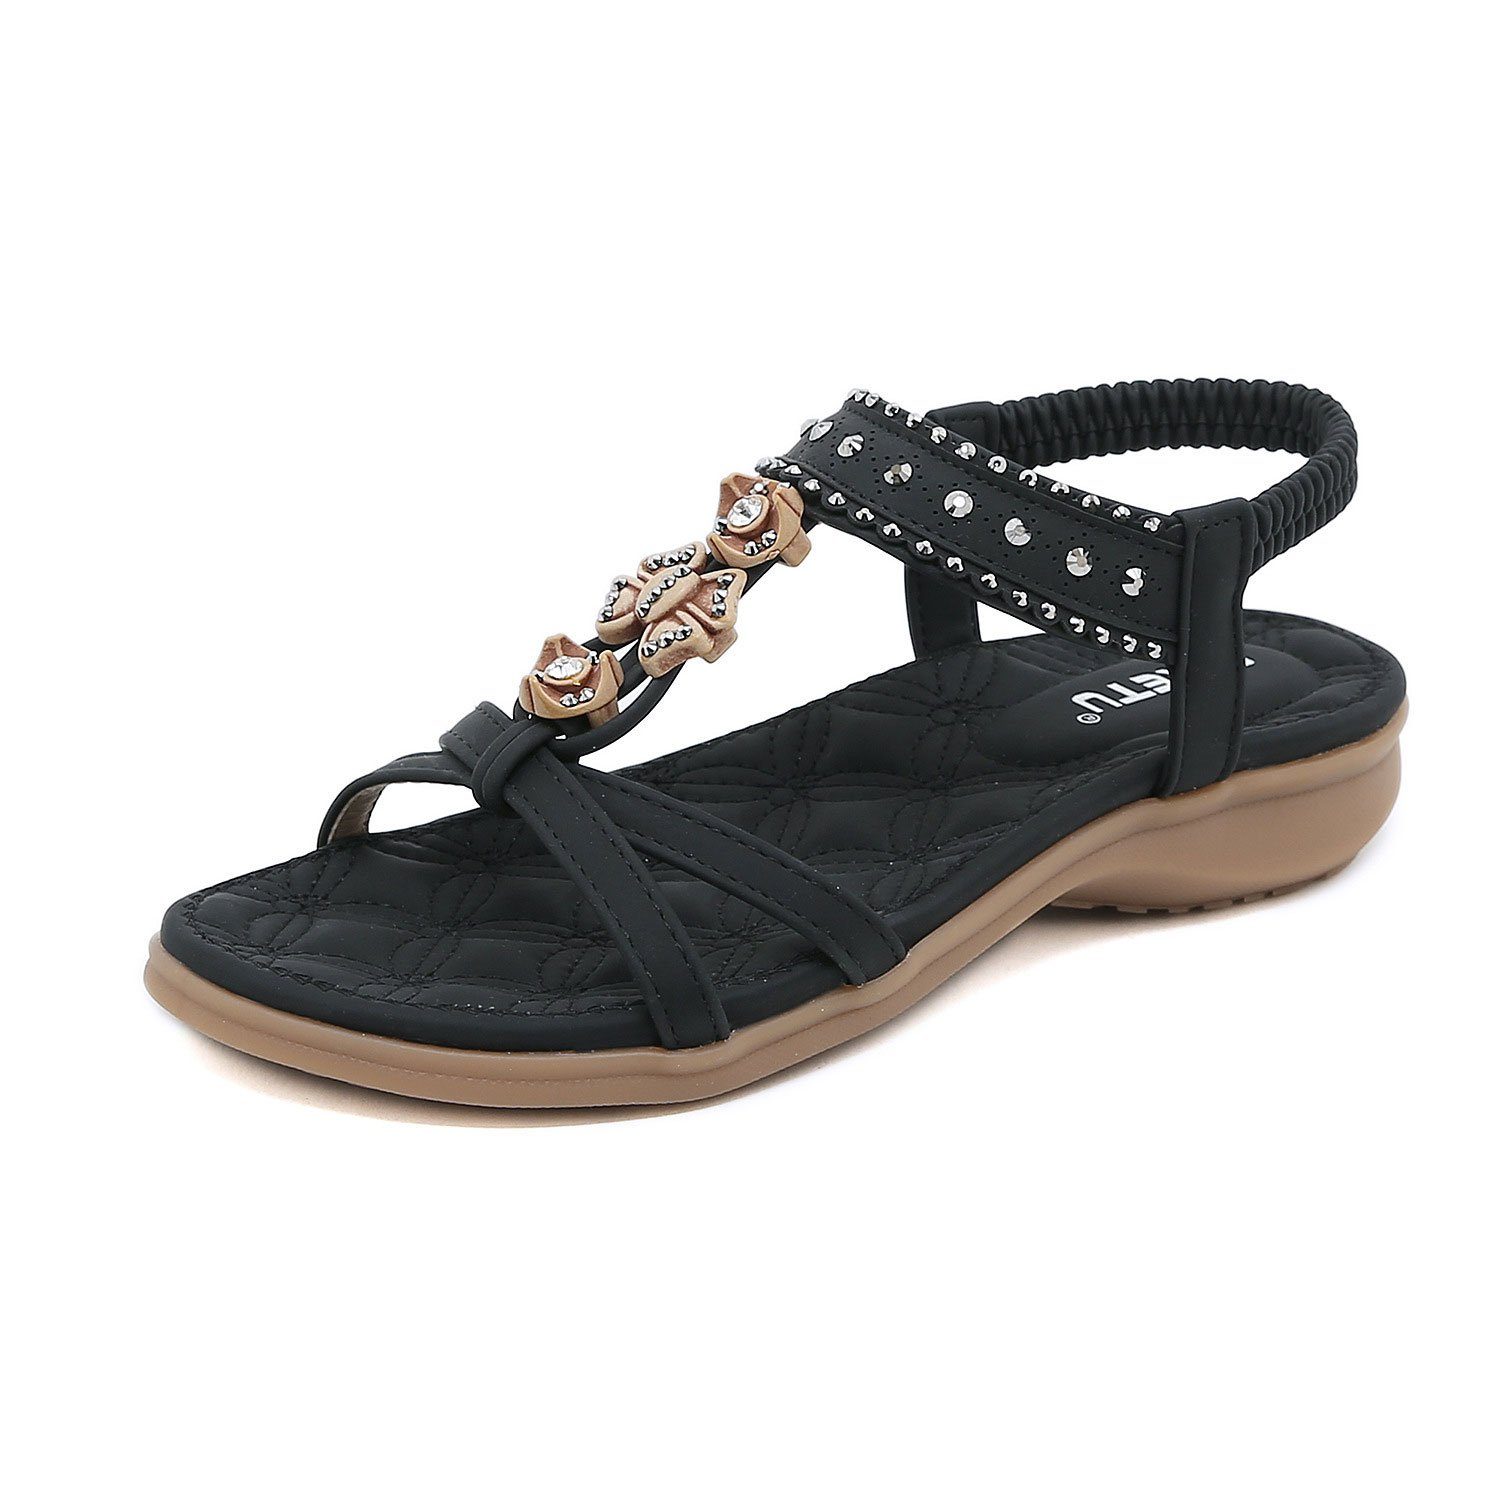 MAGICSHE Damen Sandale mit Schmuckelementen mit dekorativen Elementen Riemchensandale Bequeme, elastische Strandschuhe mit Knöchelriemen schwarz